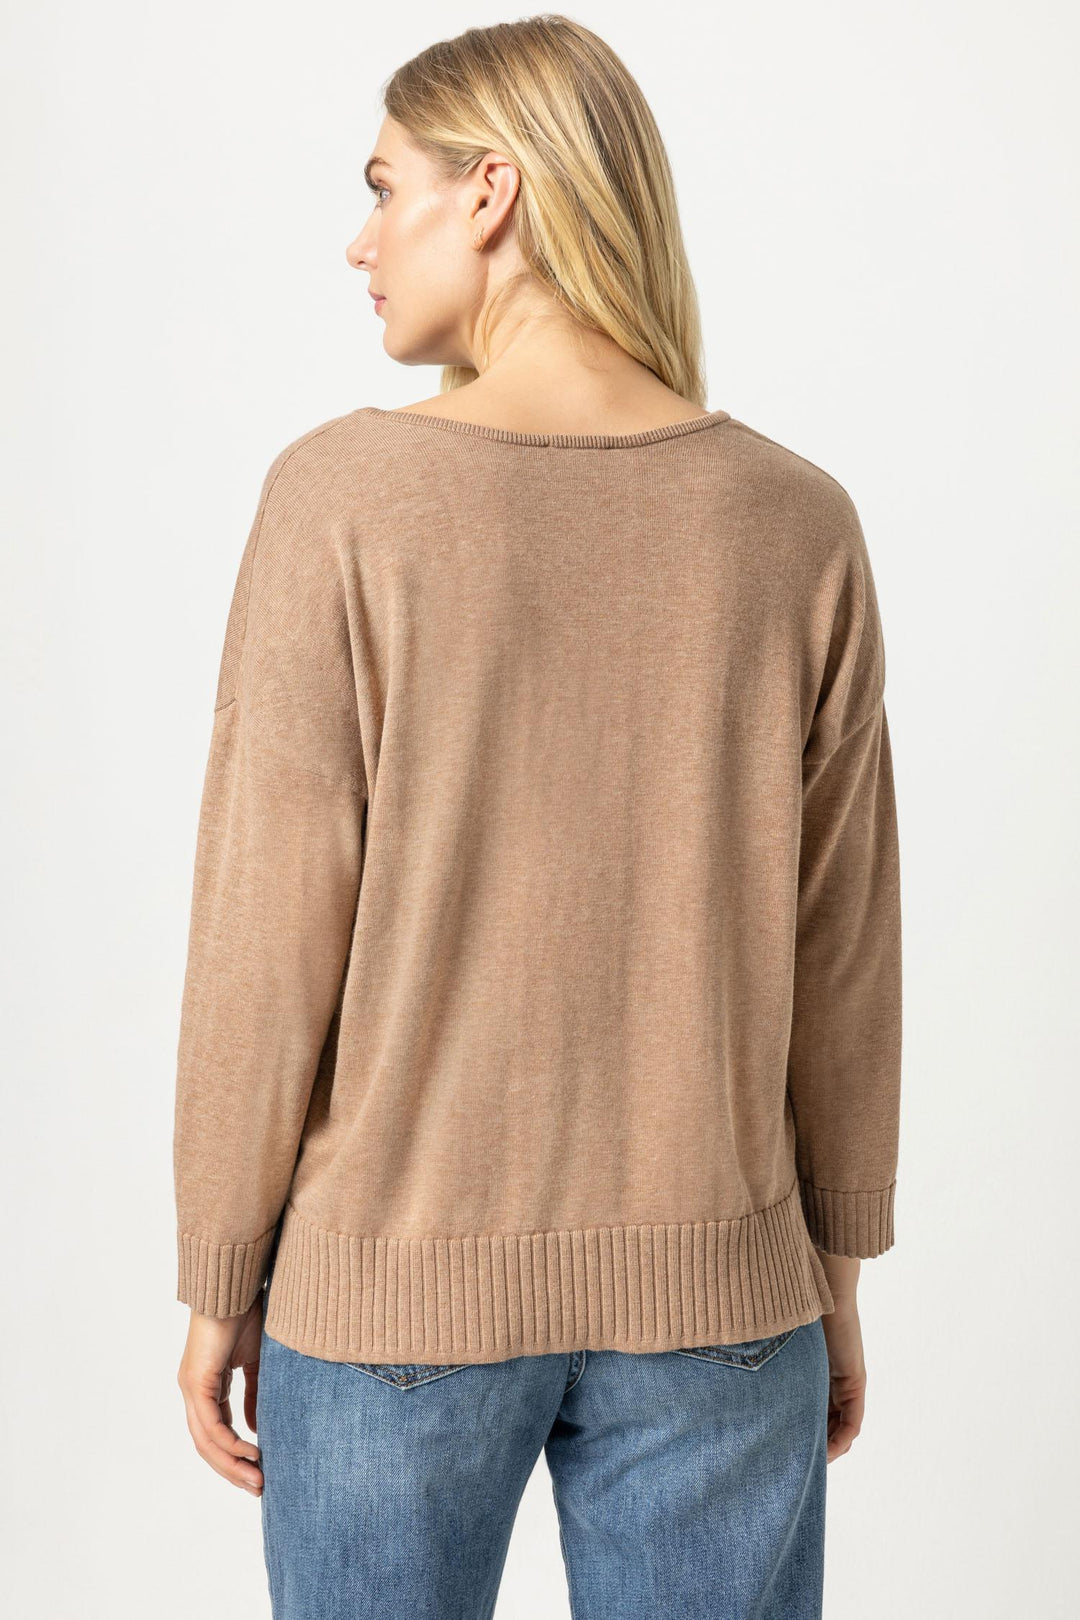 LILLA P. Split Neck Pullover Sweater - Flax